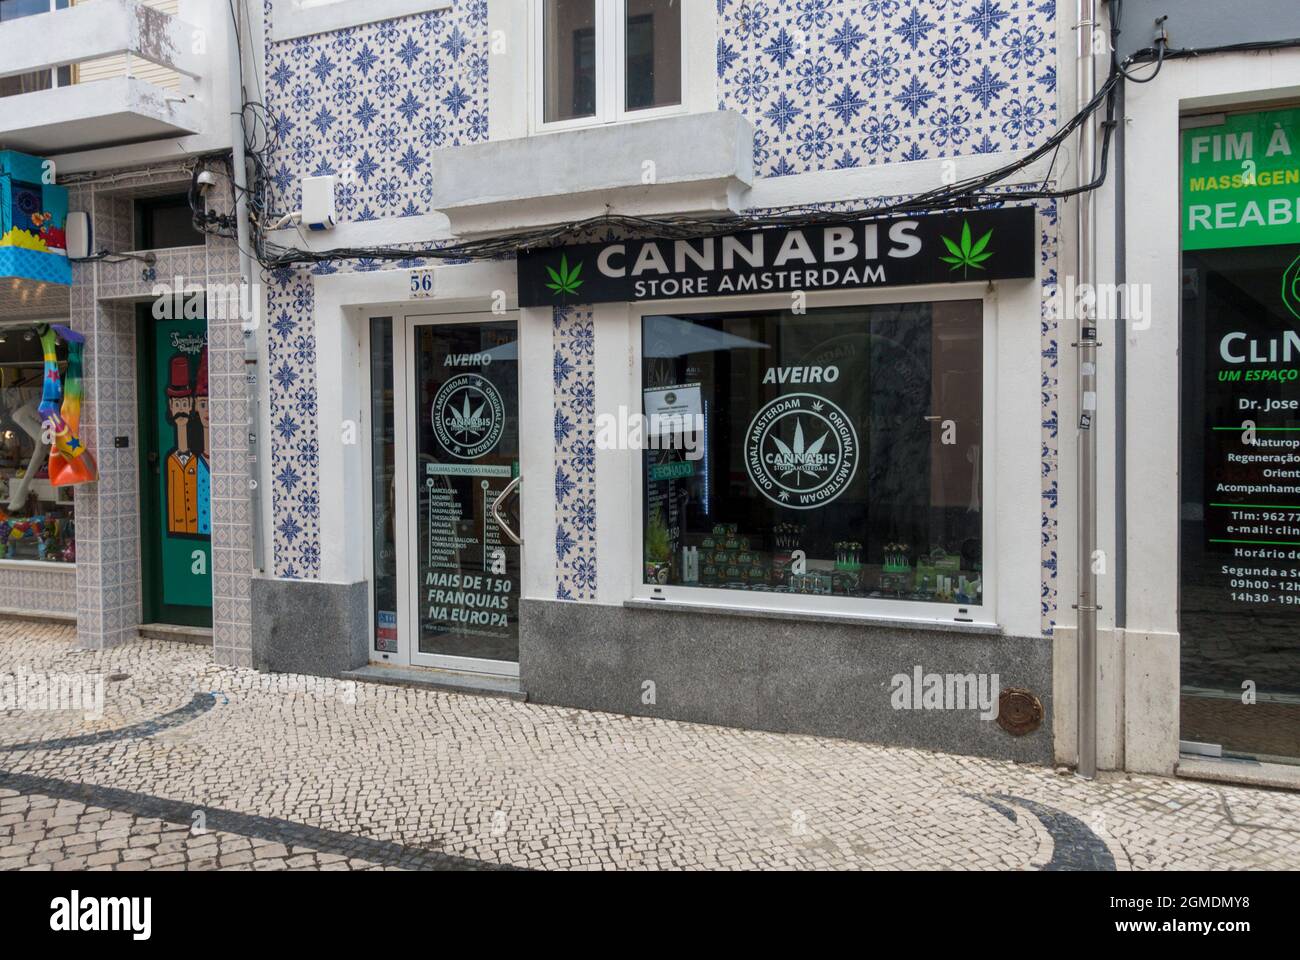 Cannabis Store amsterdam Geschäft, Geschäft, Verkauf von legalen Produkten im Zusammenhang mit Cannabis Aveiro, Portugal. Stockfoto